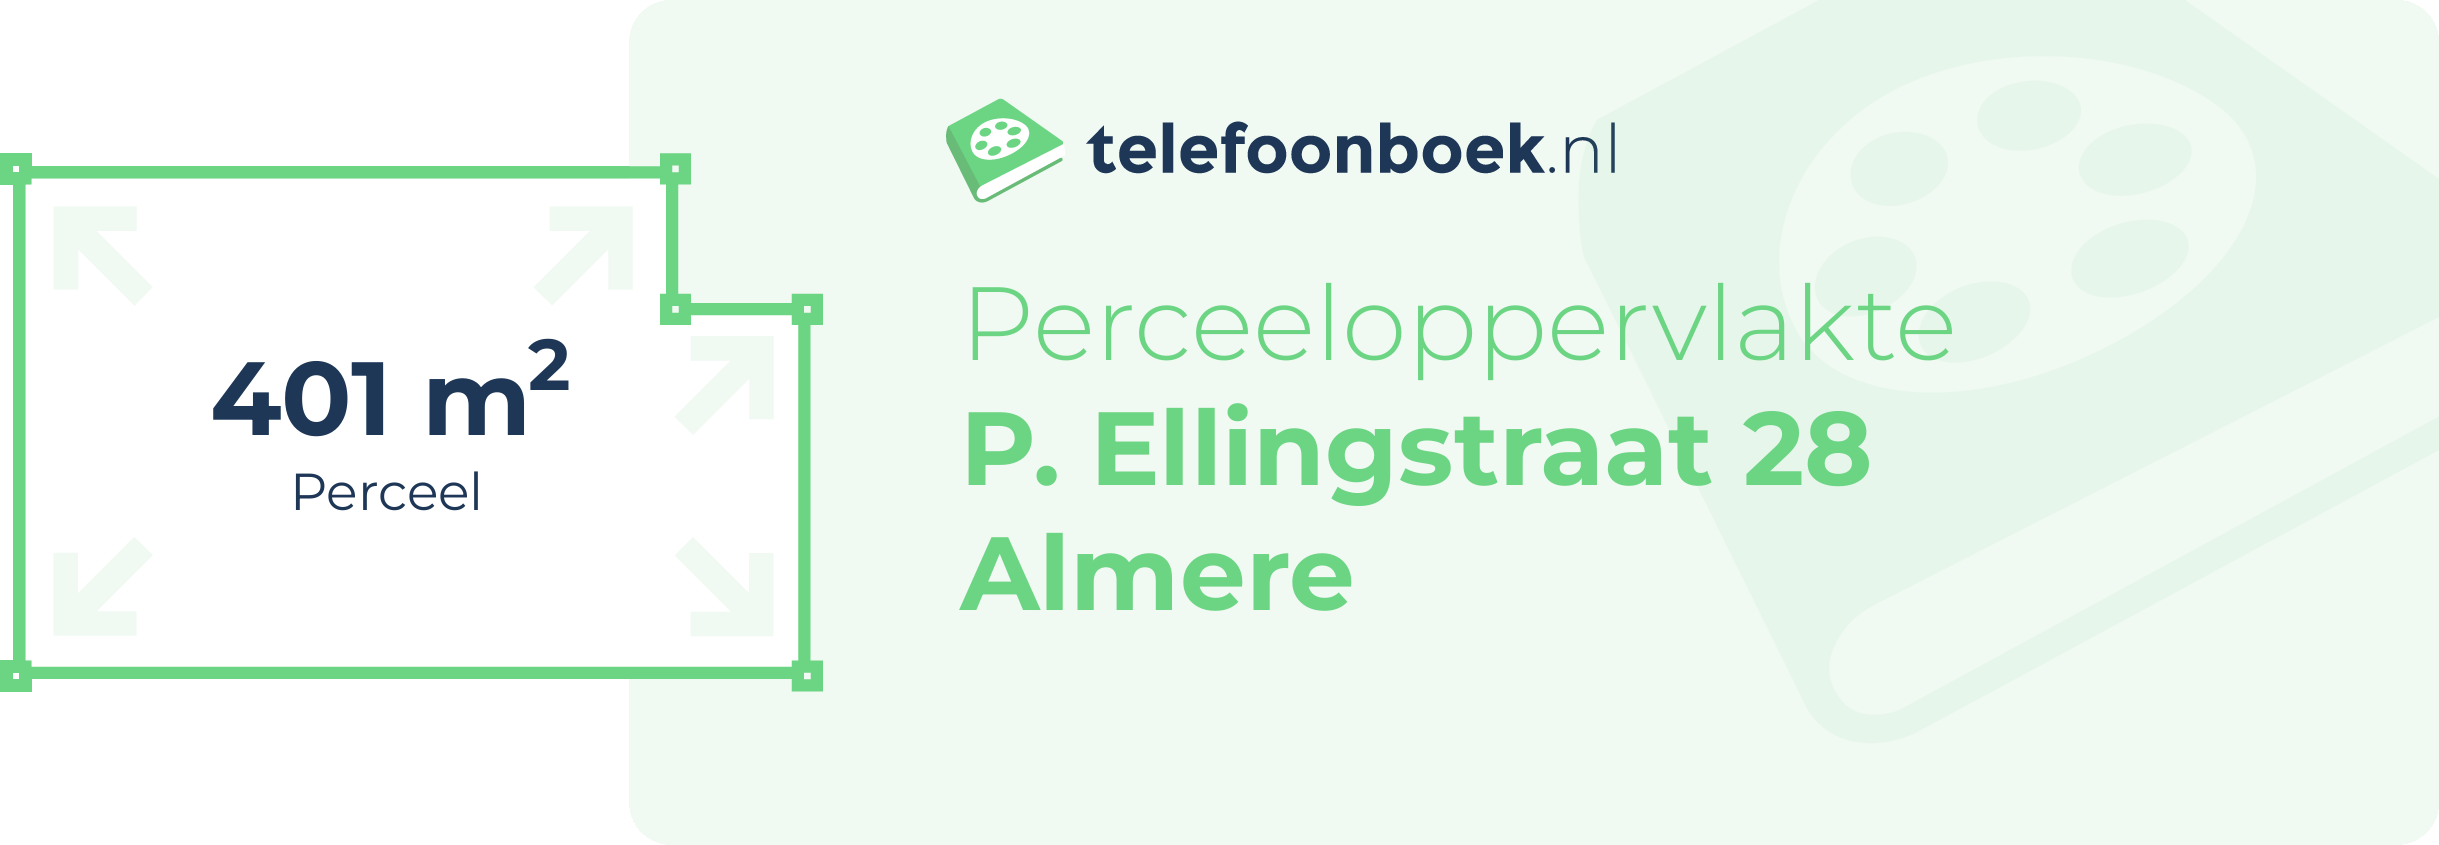 Perceeloppervlakte P. Ellingstraat 28 Almere